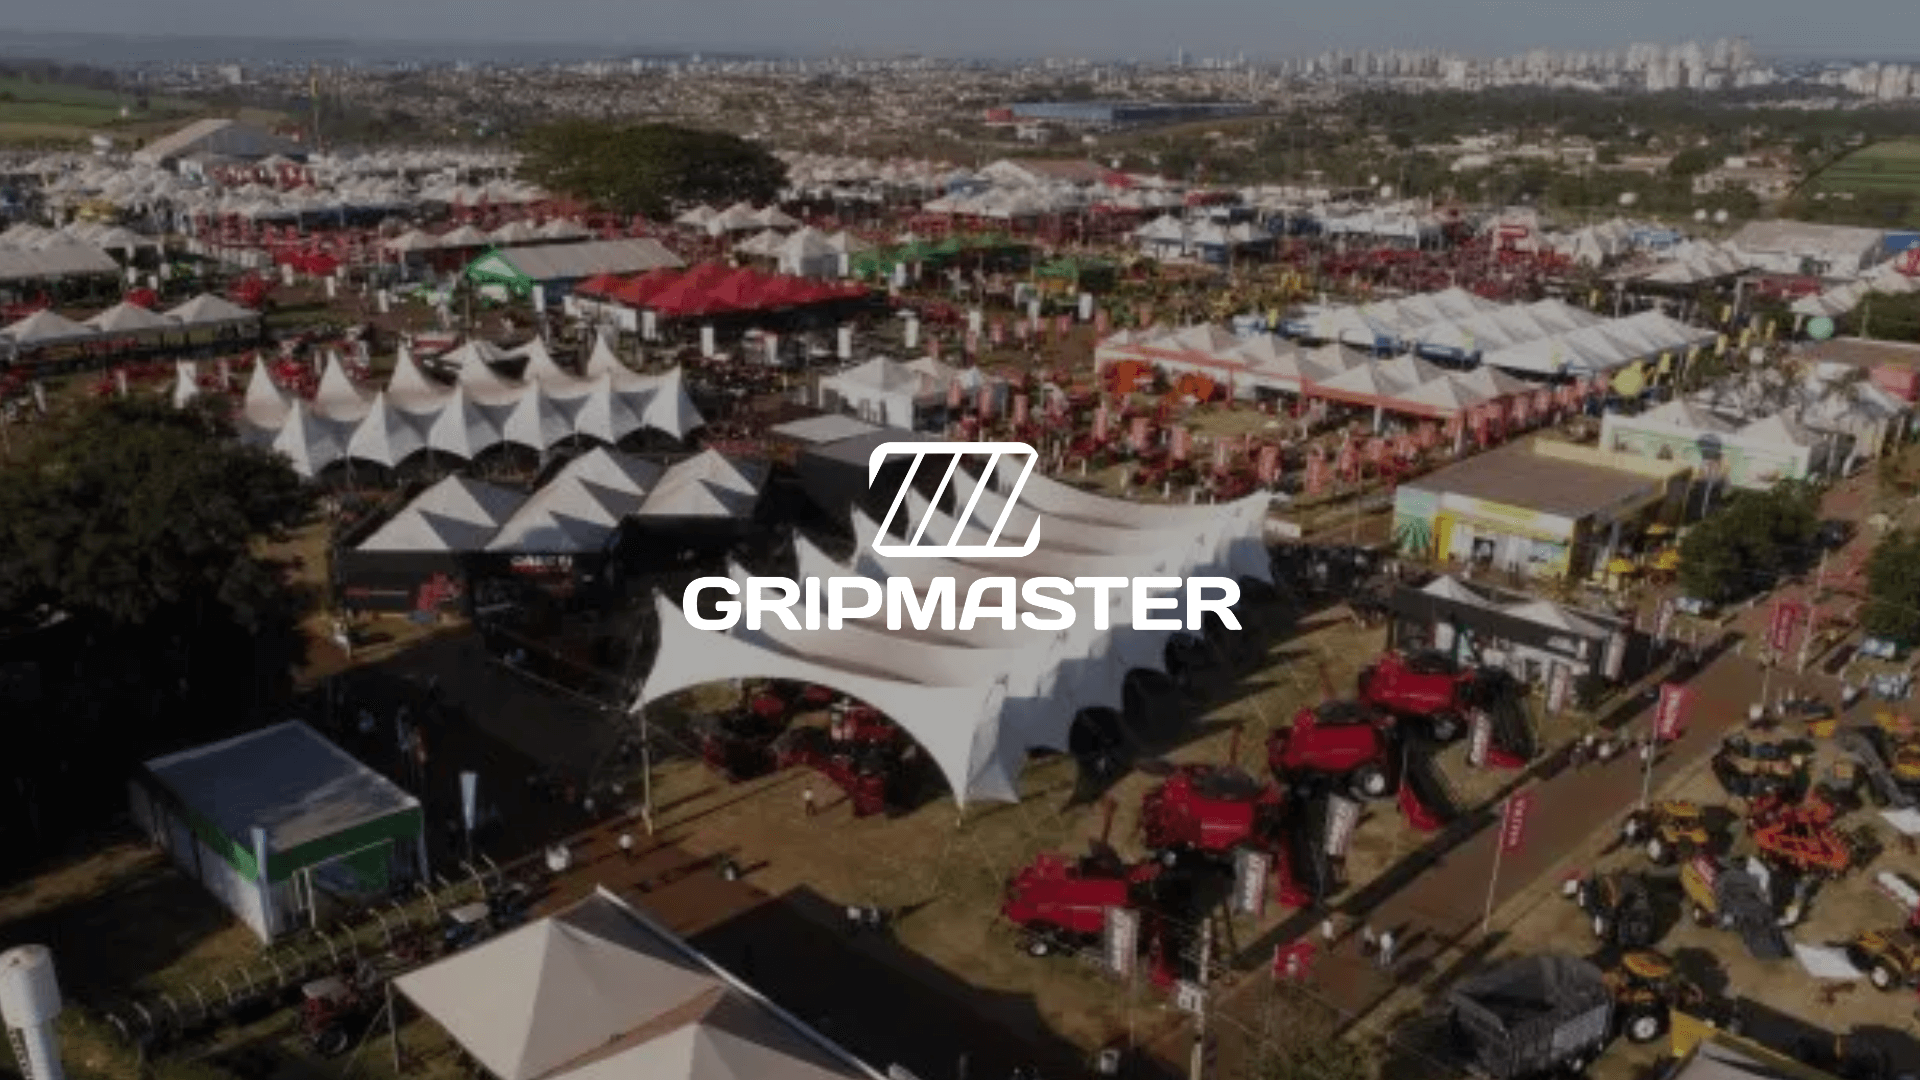 Gripmaster AgriShow